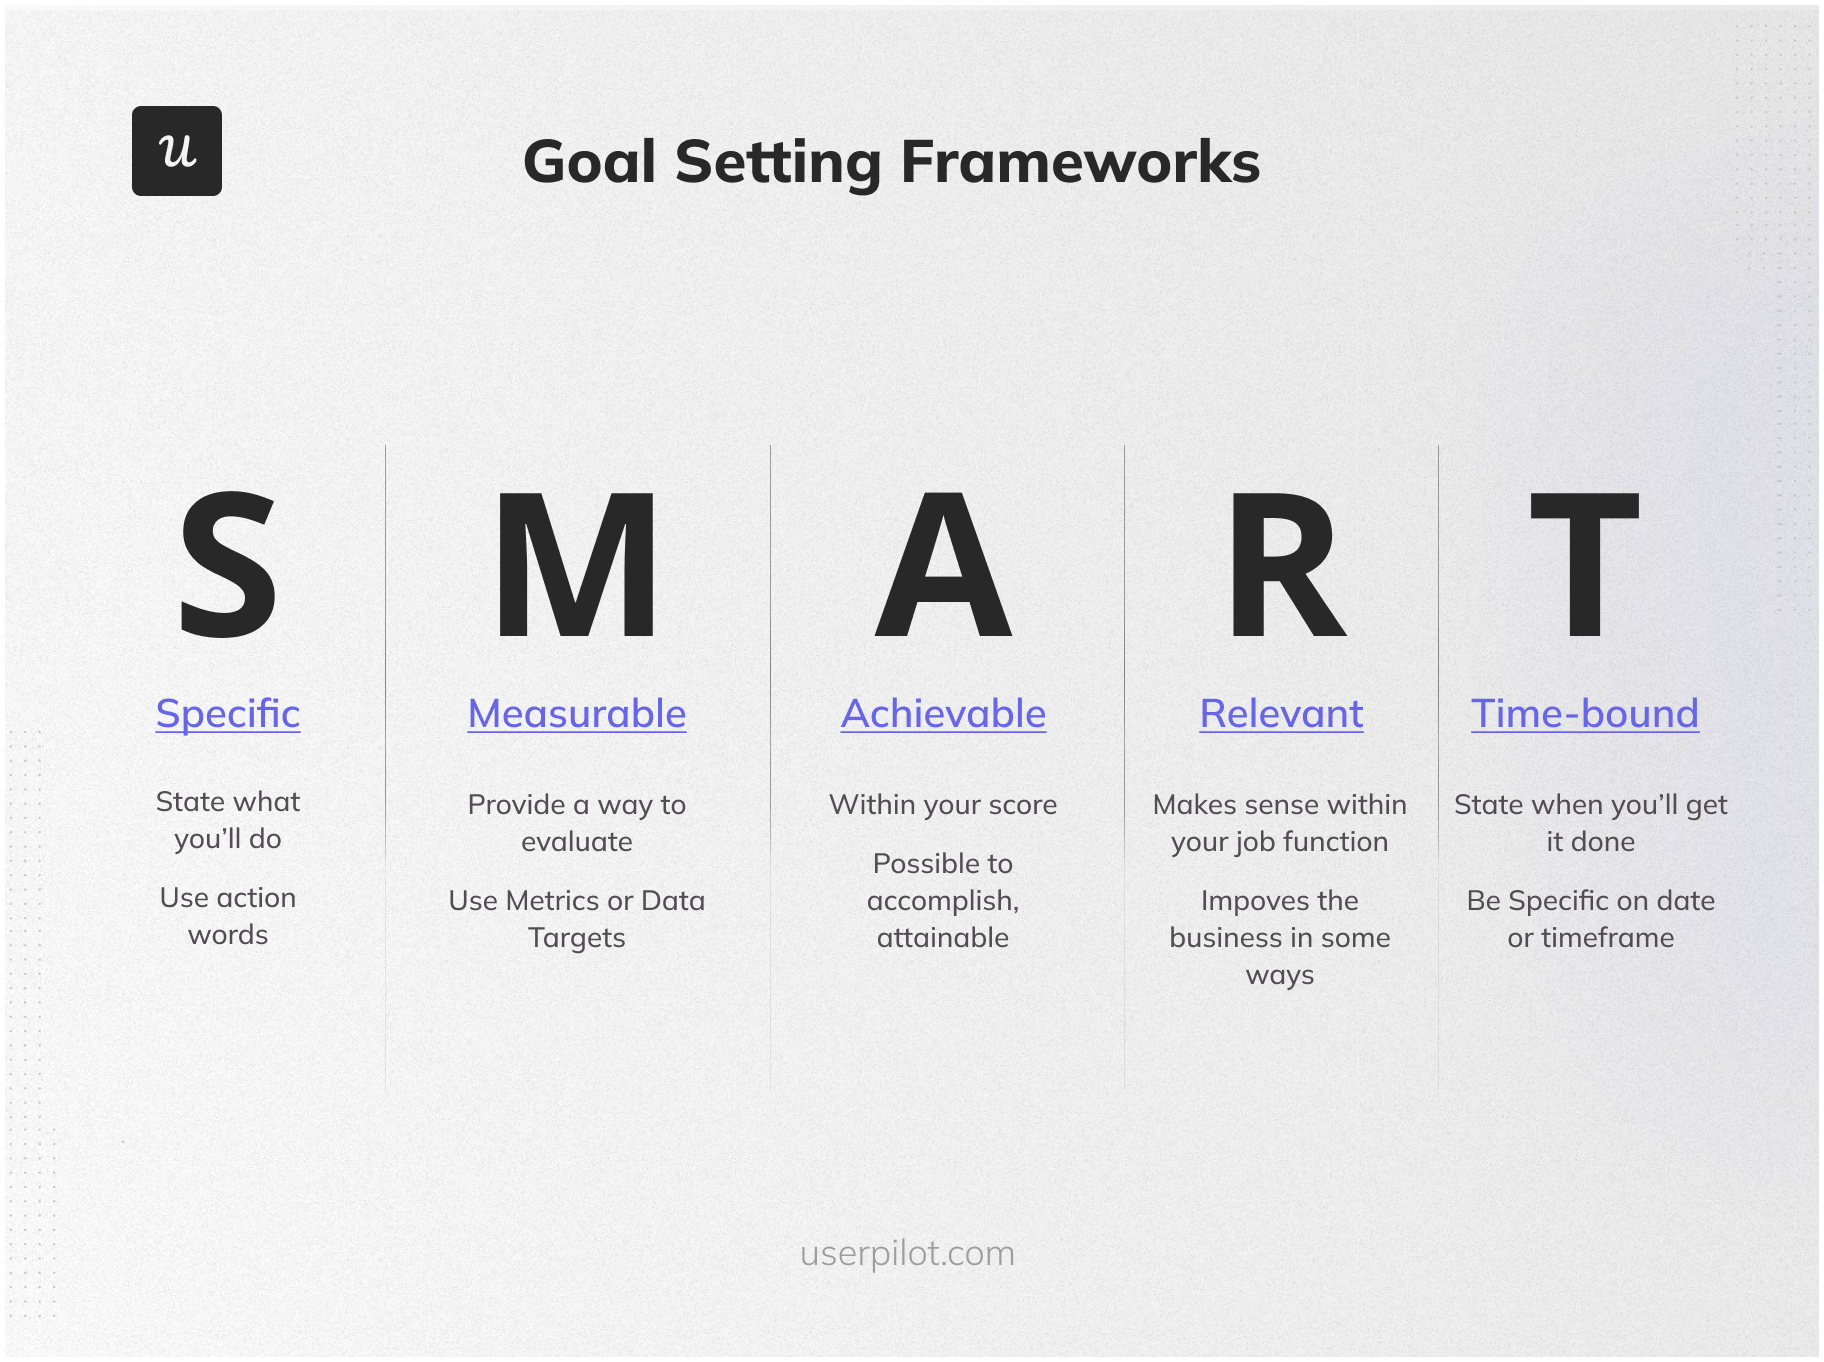 SMART goal-setting framework 